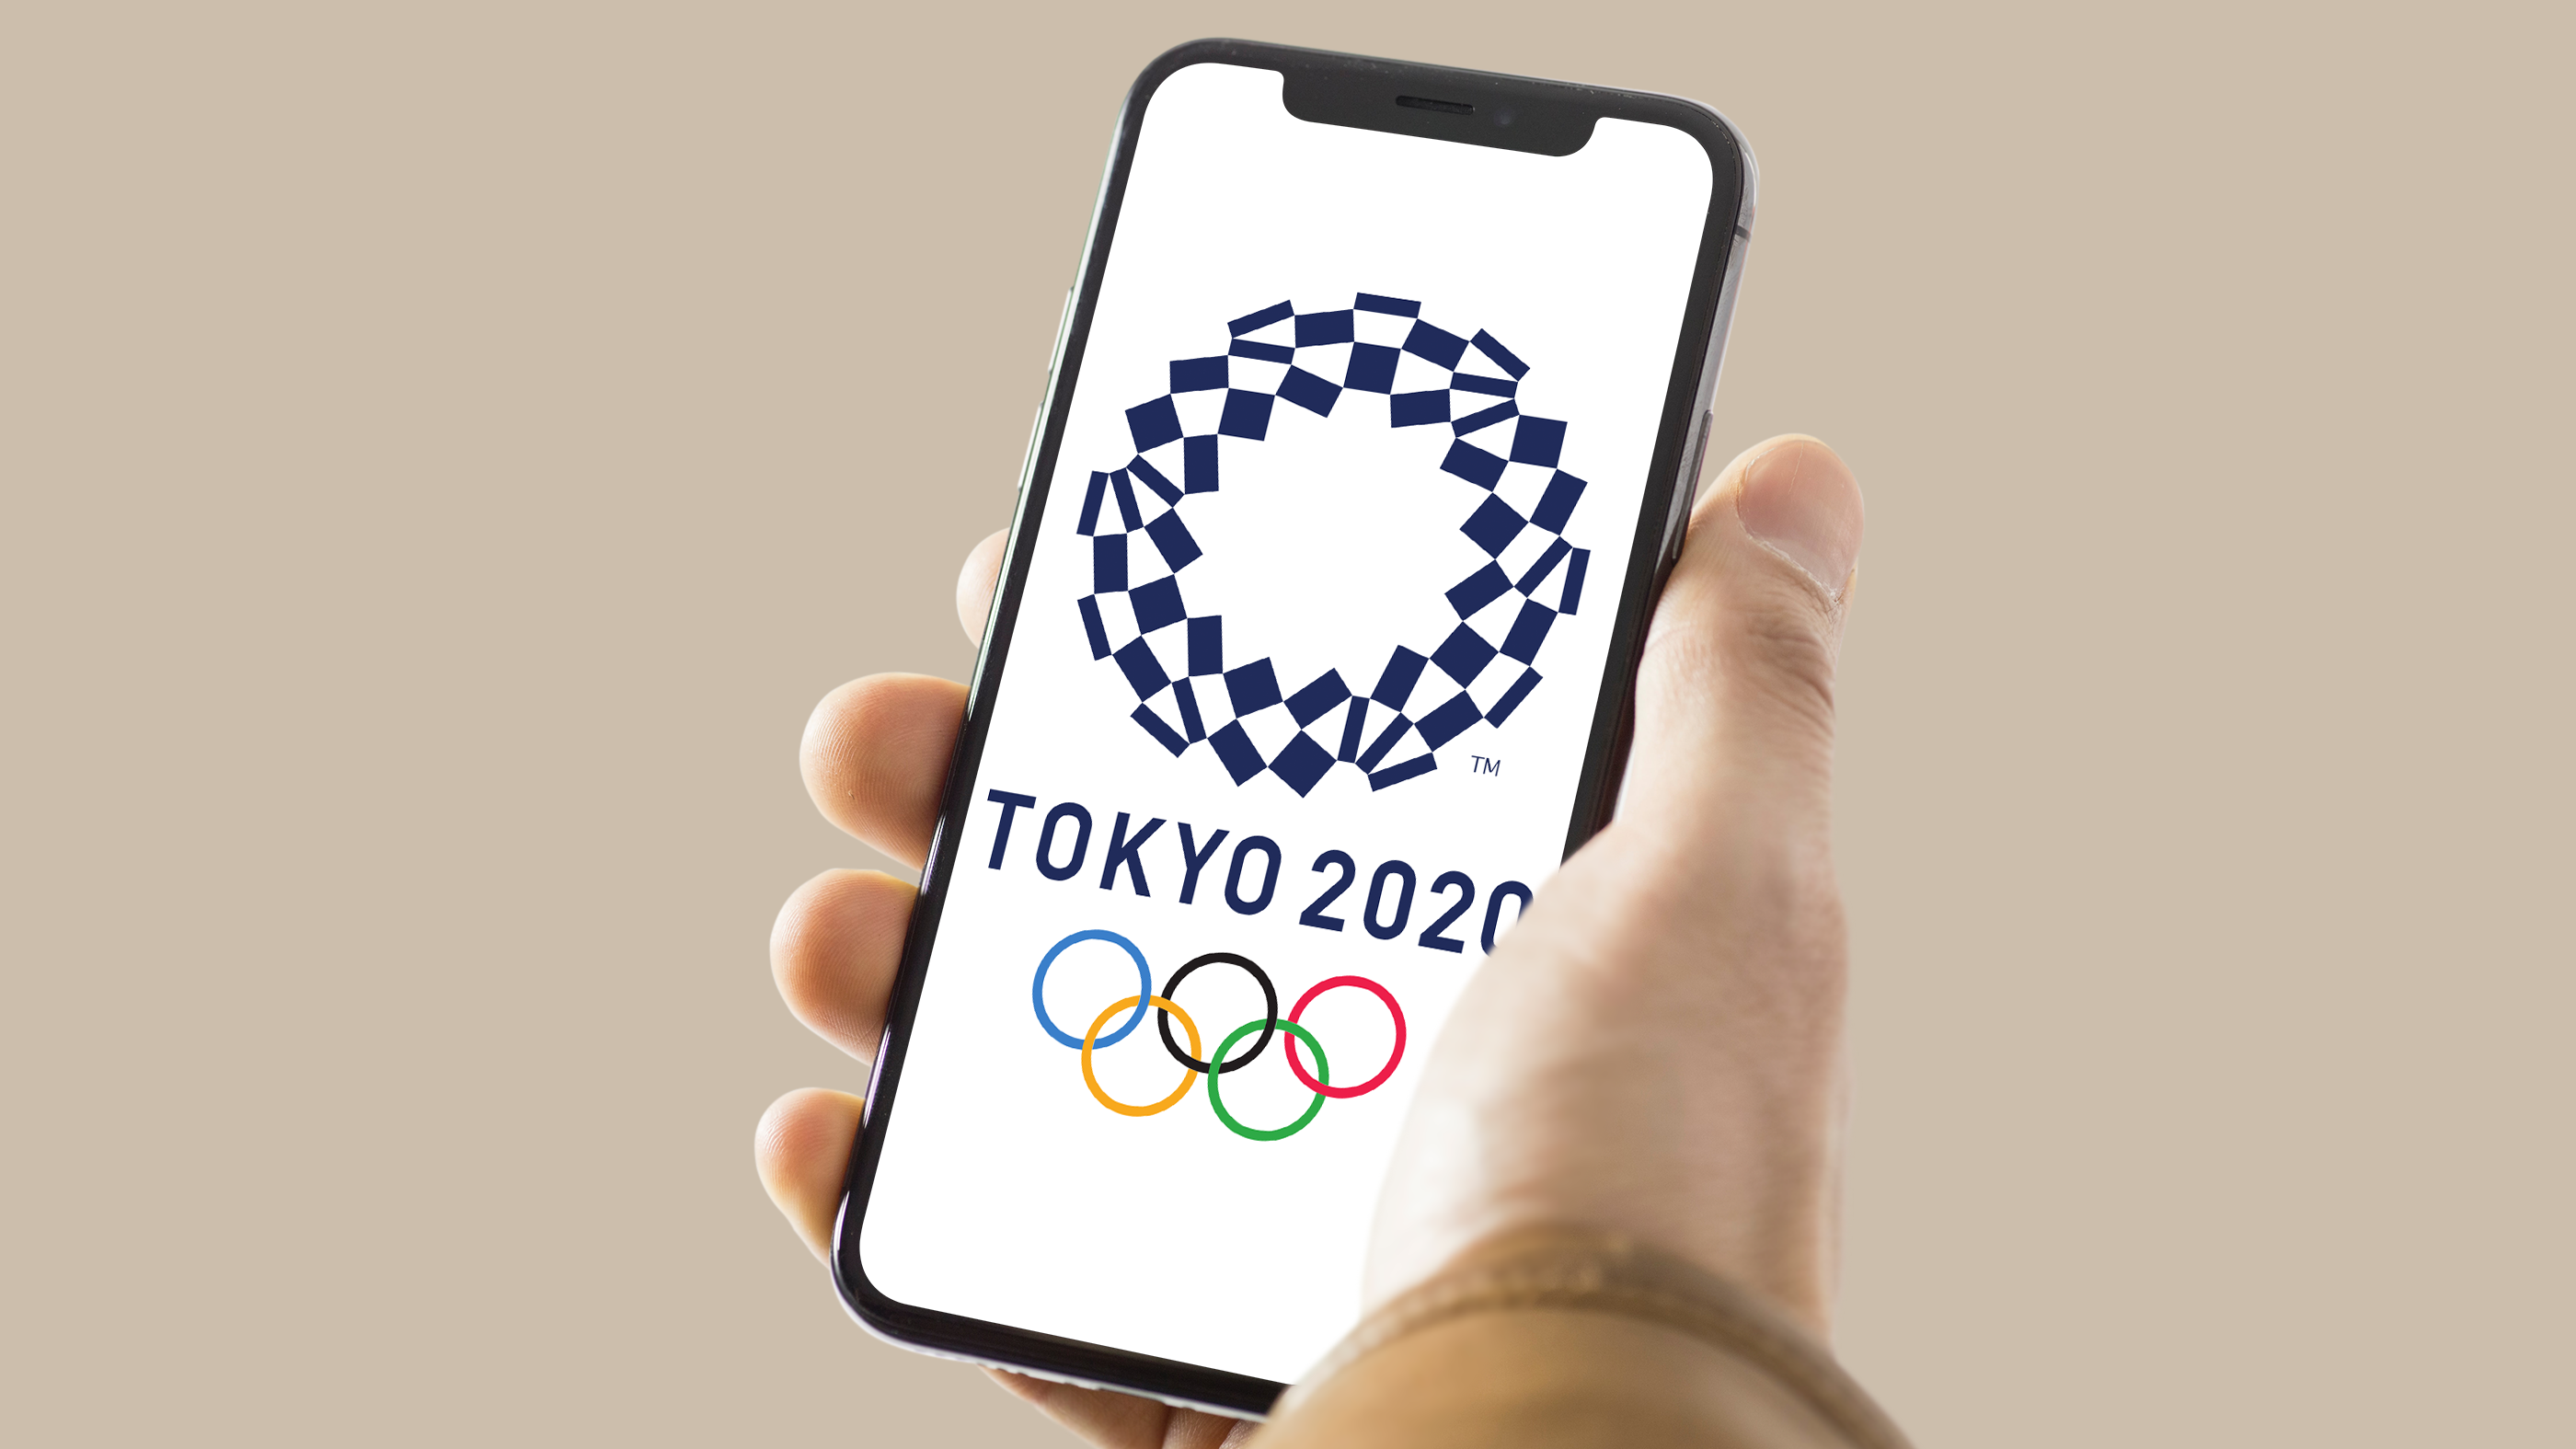 Olimpíadas 2021: como acompanhar a programação dos Jogos Olímpicos